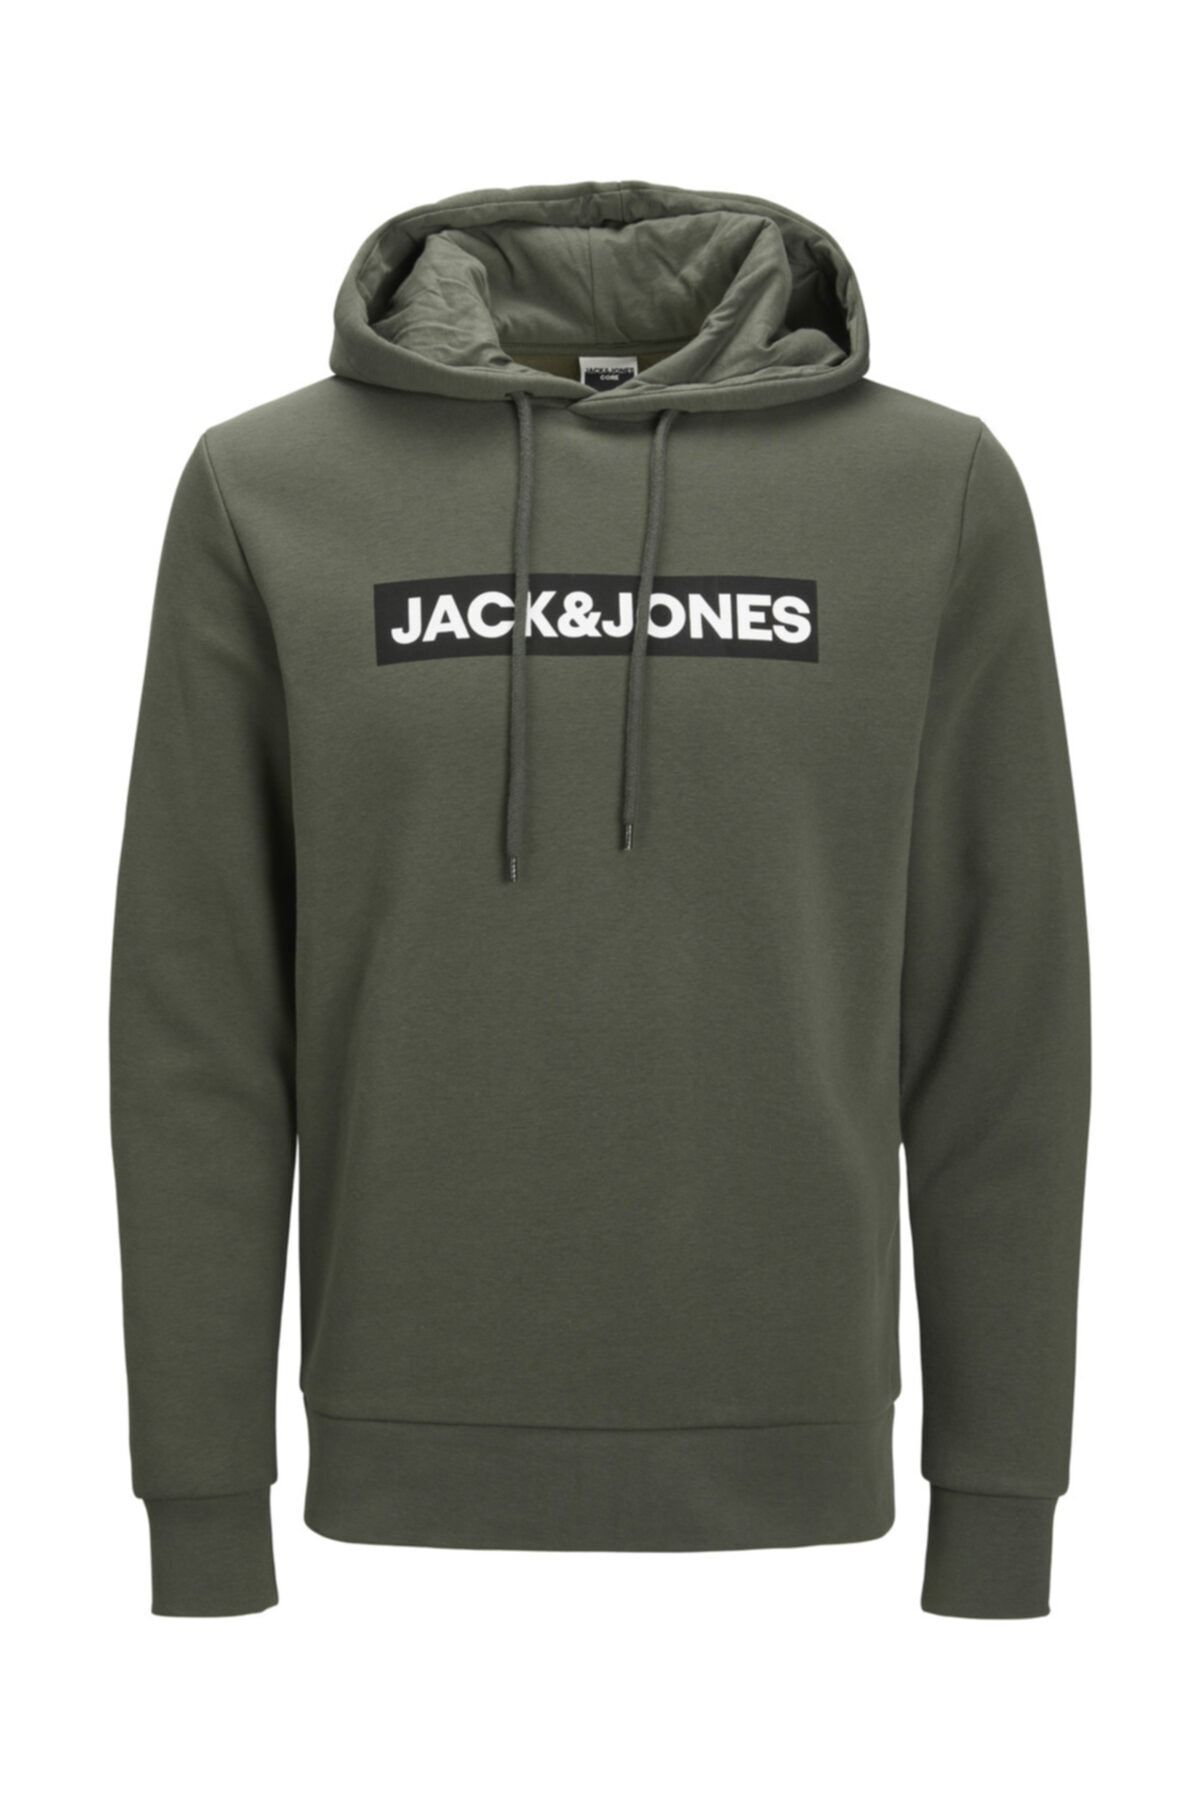 Jack & Jones Kapüşonlu Göğüs Logo Baskılı Sweatshirt 12214643 Jcomınder